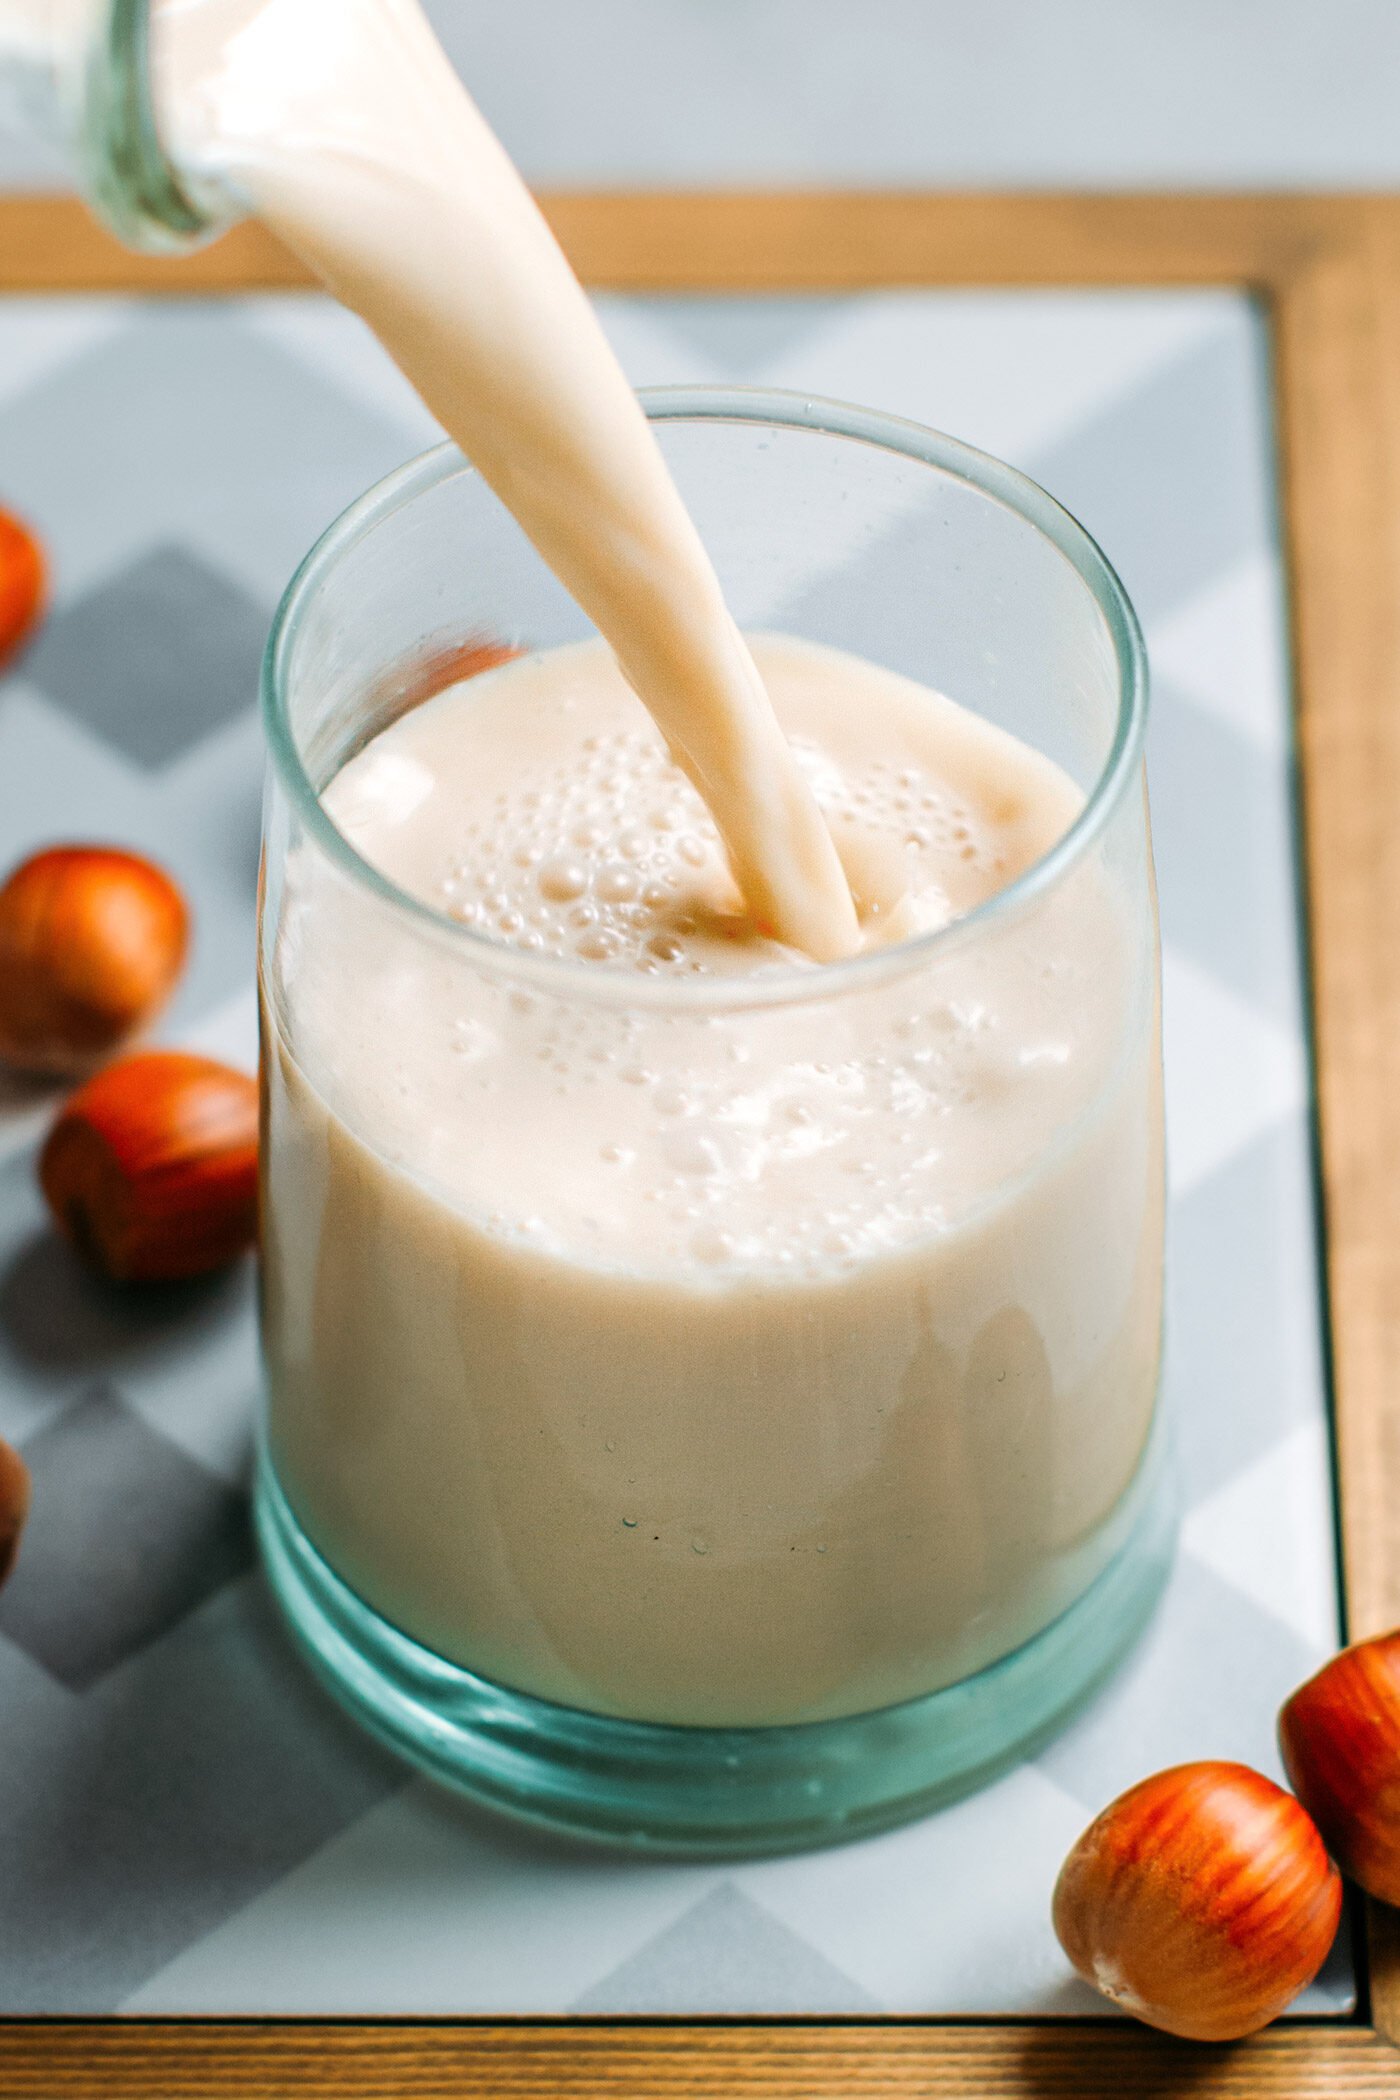 How to Make Hazelnut Milk